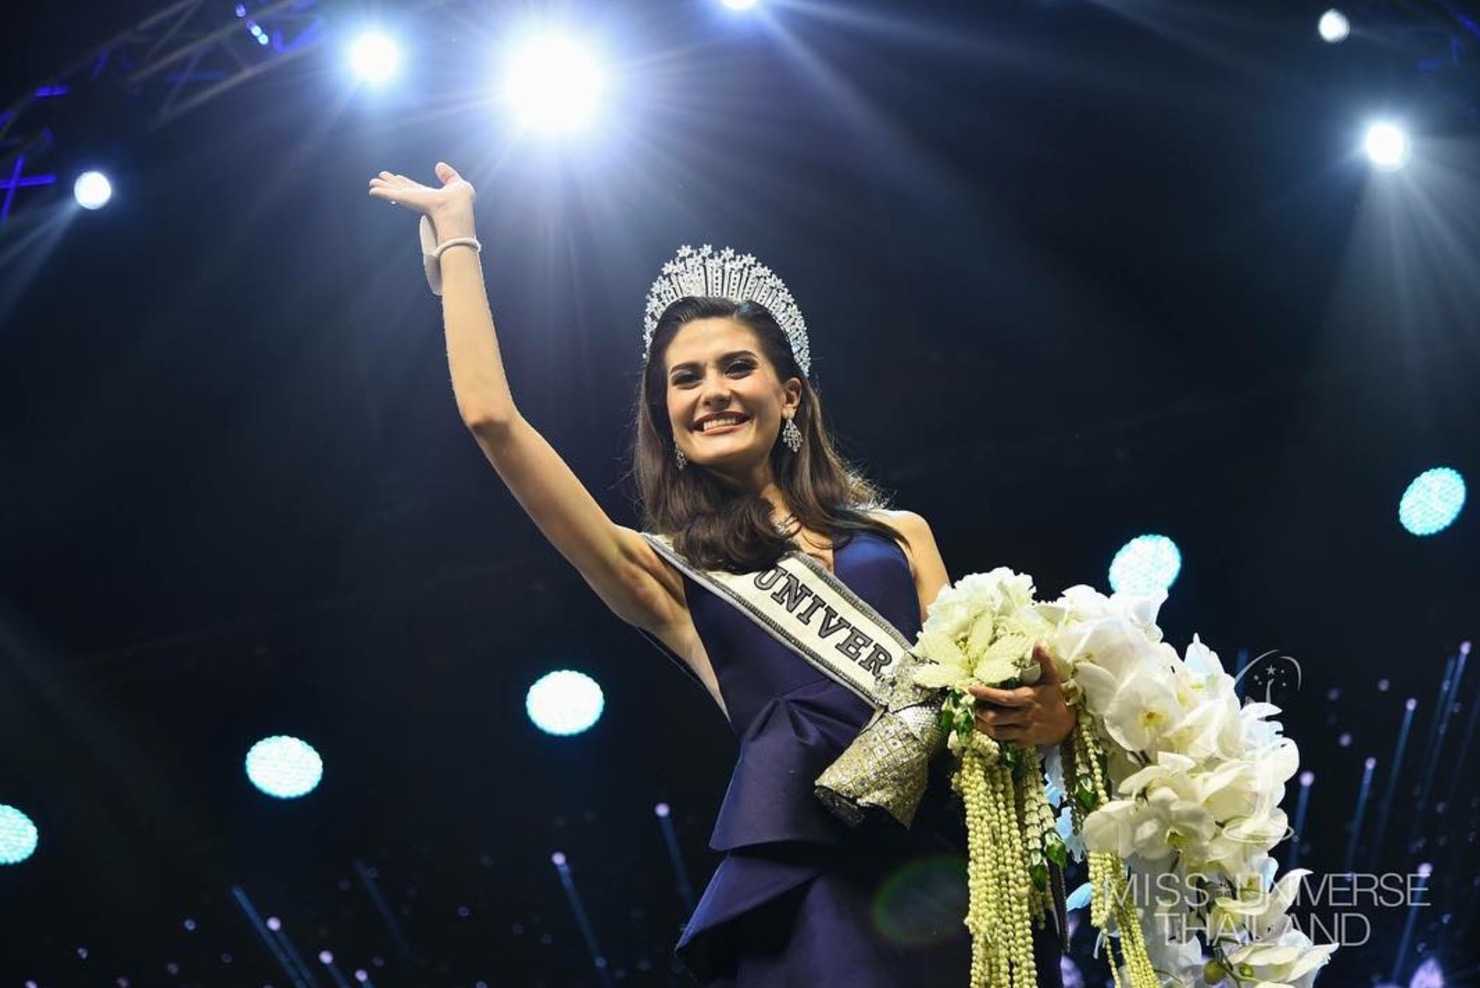 25-year-old half-Thai, half-Swedish model Mareeya Poonlertlarp Ehren wins Miss Thailand 2017. PHOTO: Instagram/Miss Universe Thailand